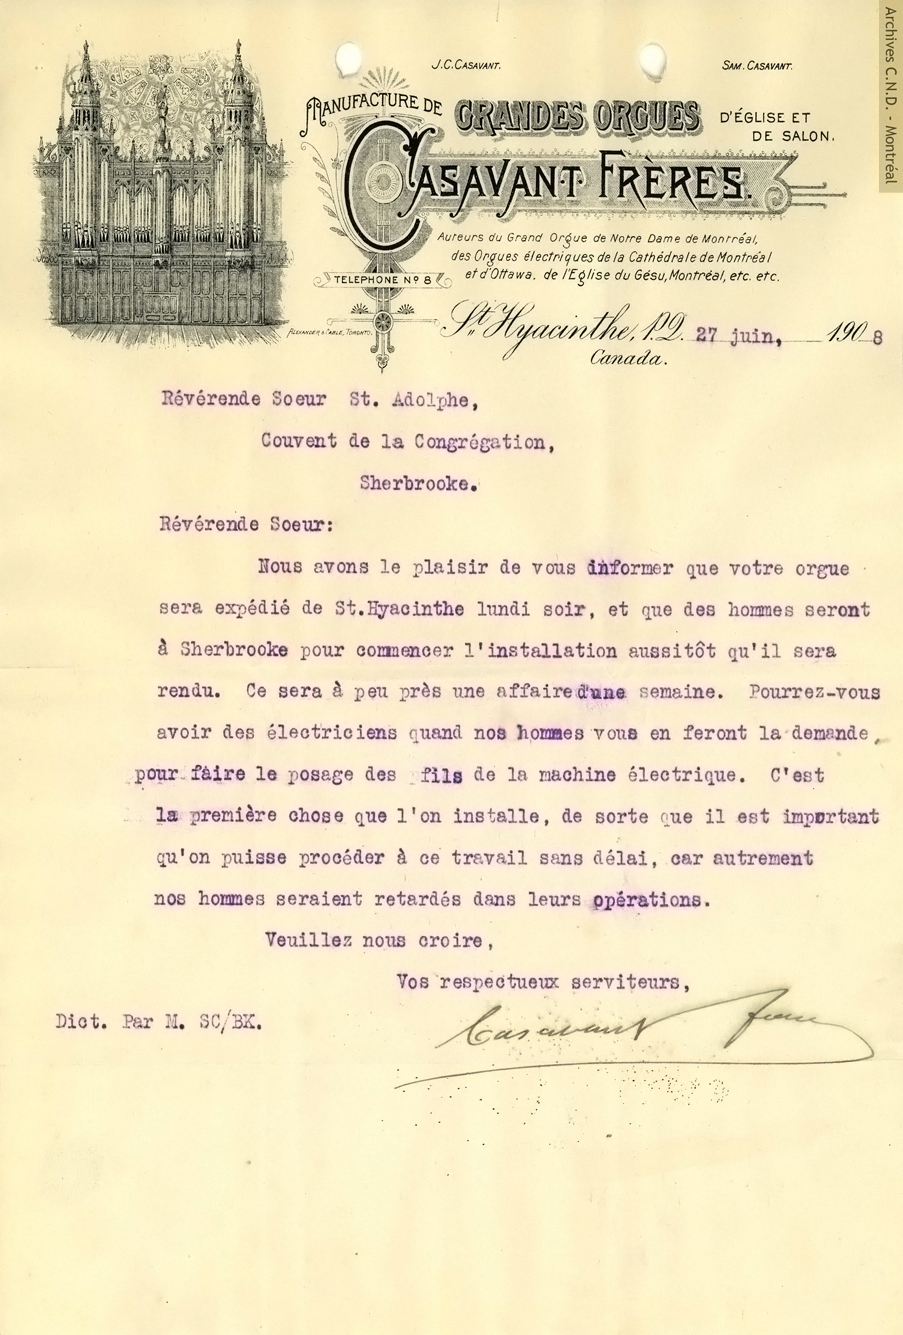 Carta de los Hermanos Casavant relacionada a la expedición del órgano pedido por la Capilla de Mont Notre-Dame